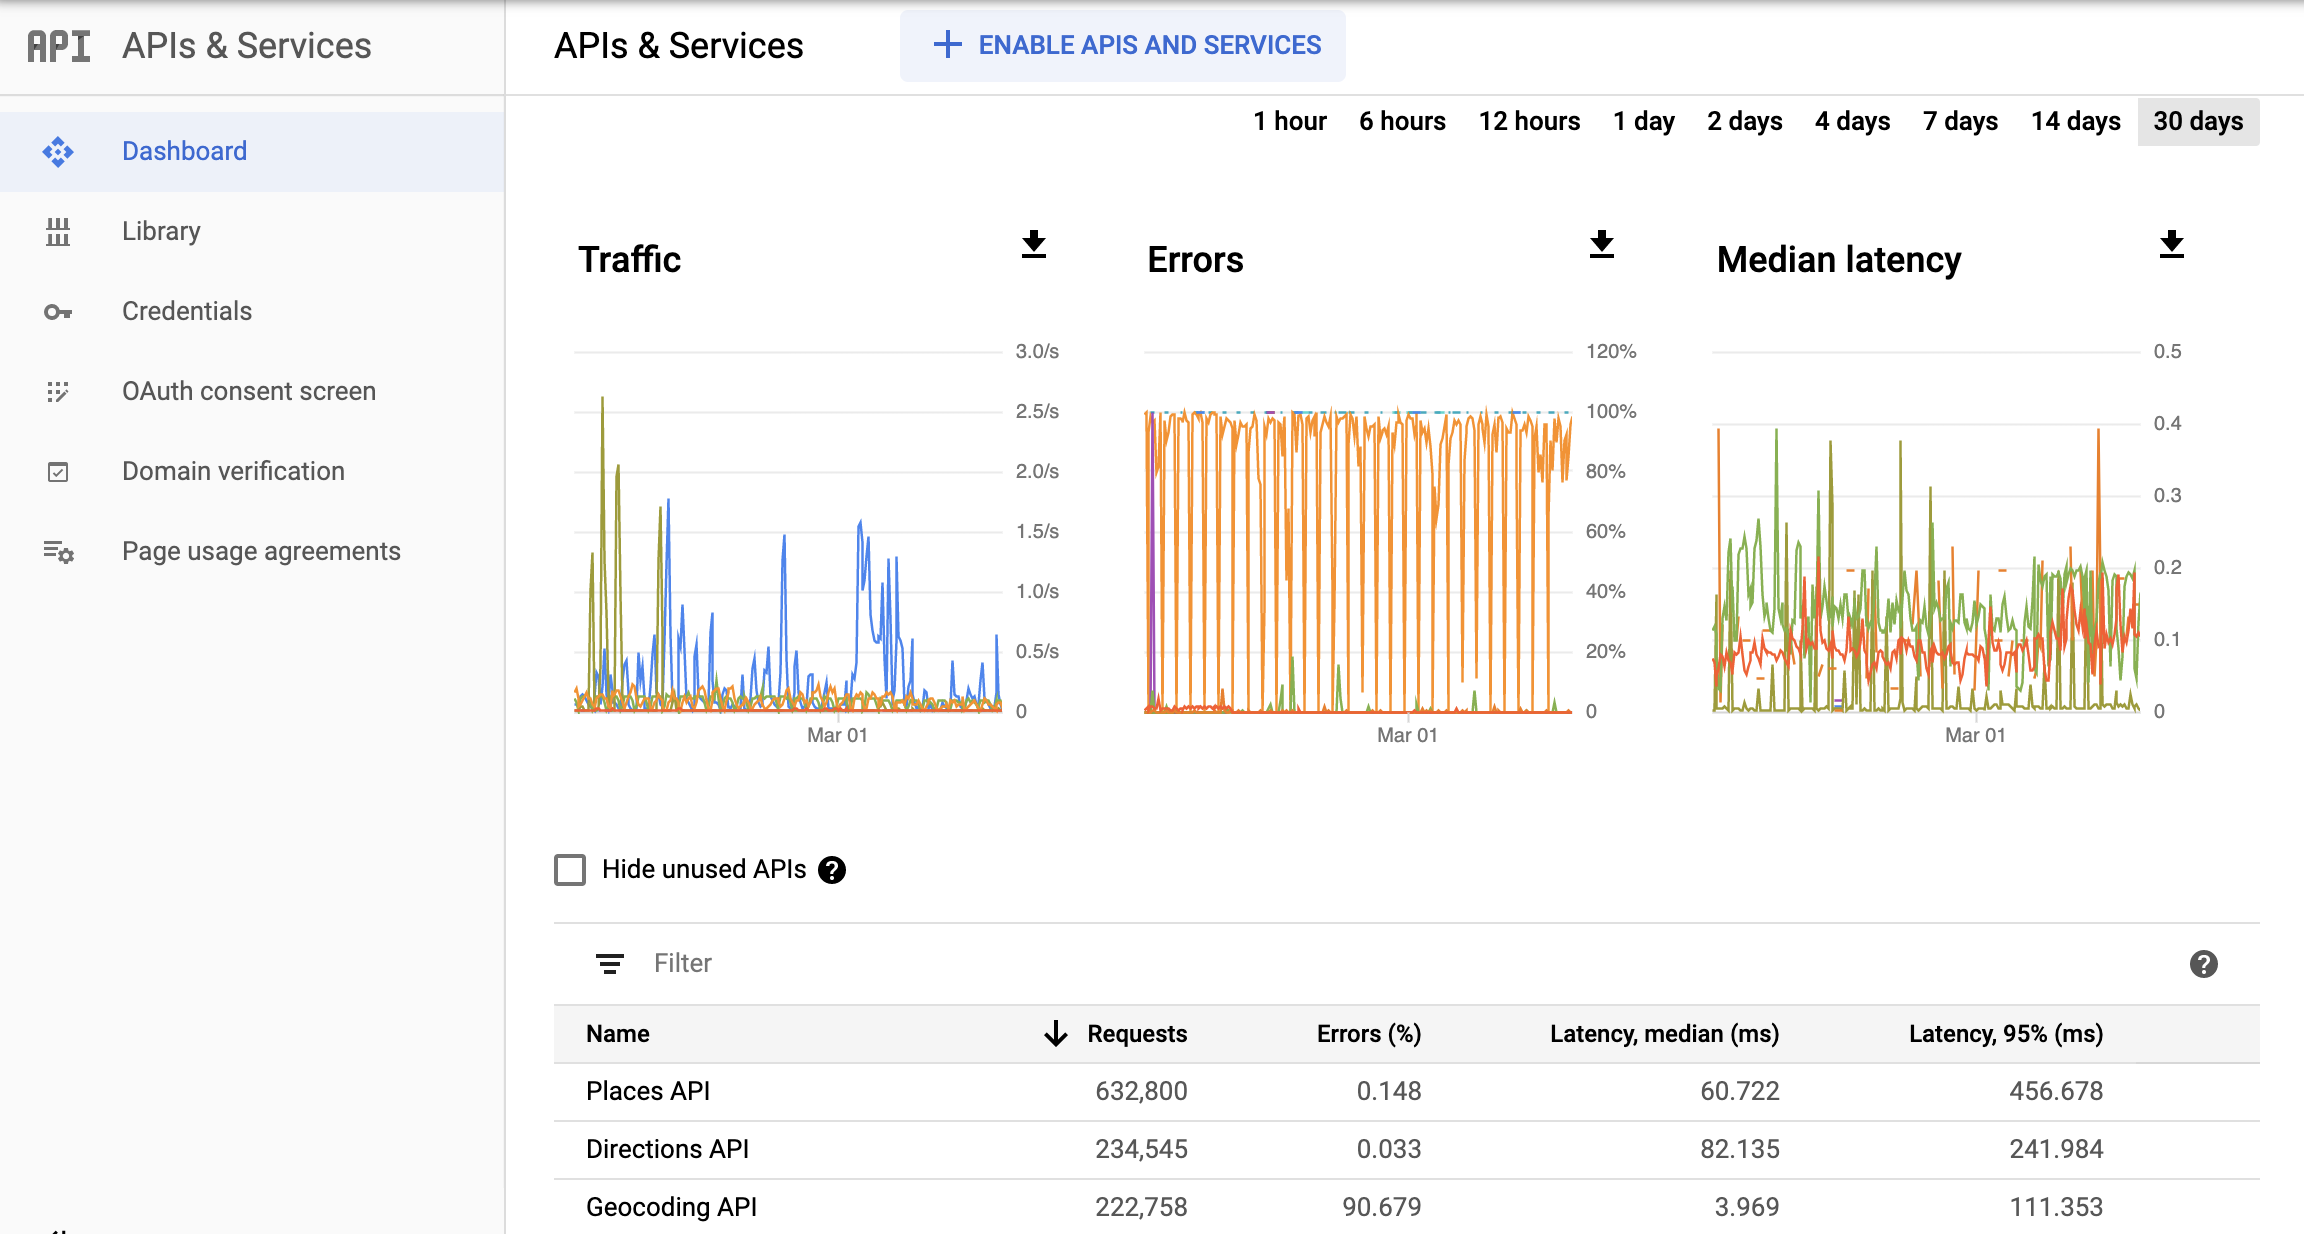 Скриншот страницы Monitoring API в Google Cloud Console, где открыта сводка с отчетом APIs & Services (API и сервисы). На нем показаны три графика: Traffic (Трафик), Errors (Ошибки) и Median Latency (Медианная задержка). Эти графики могут содержать данные за период от одного часа до 30 дней.